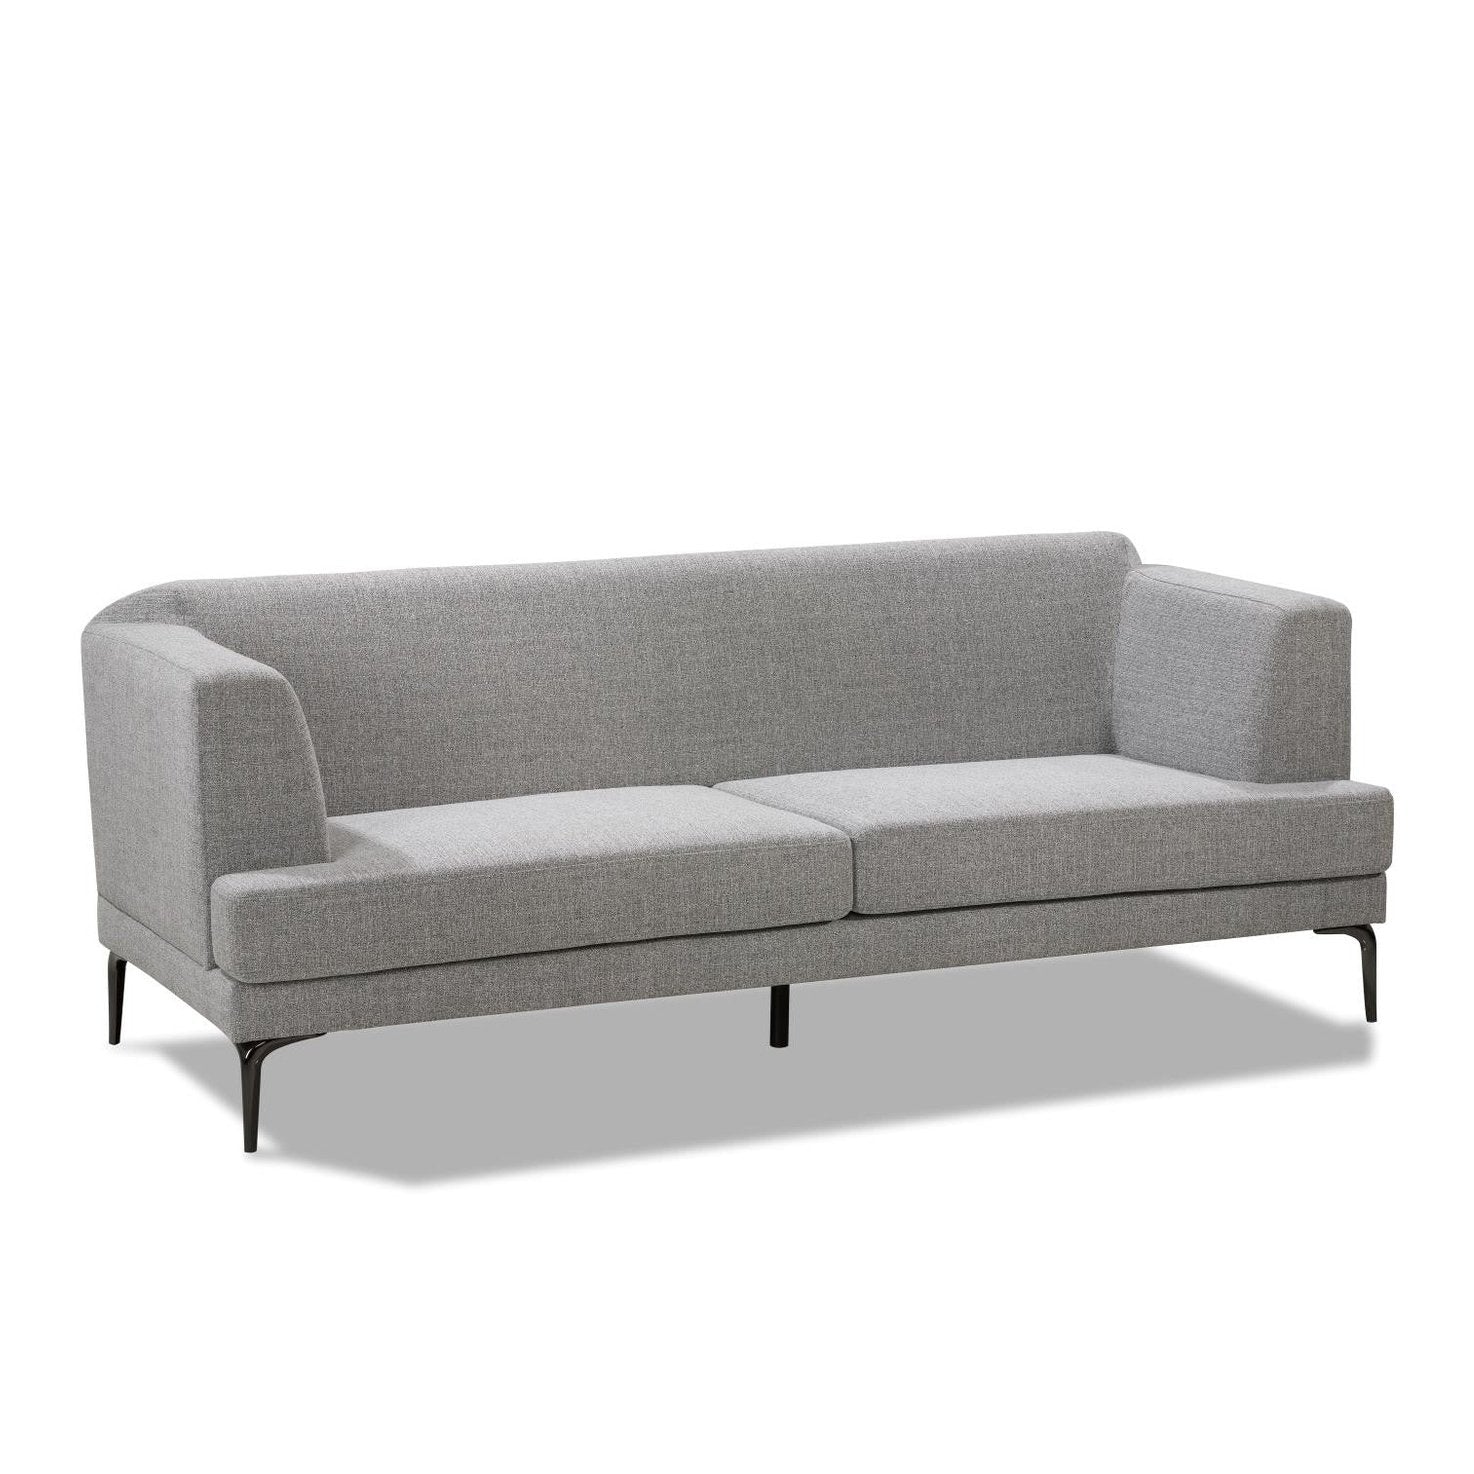 Beckton Sofa - Unica Interior